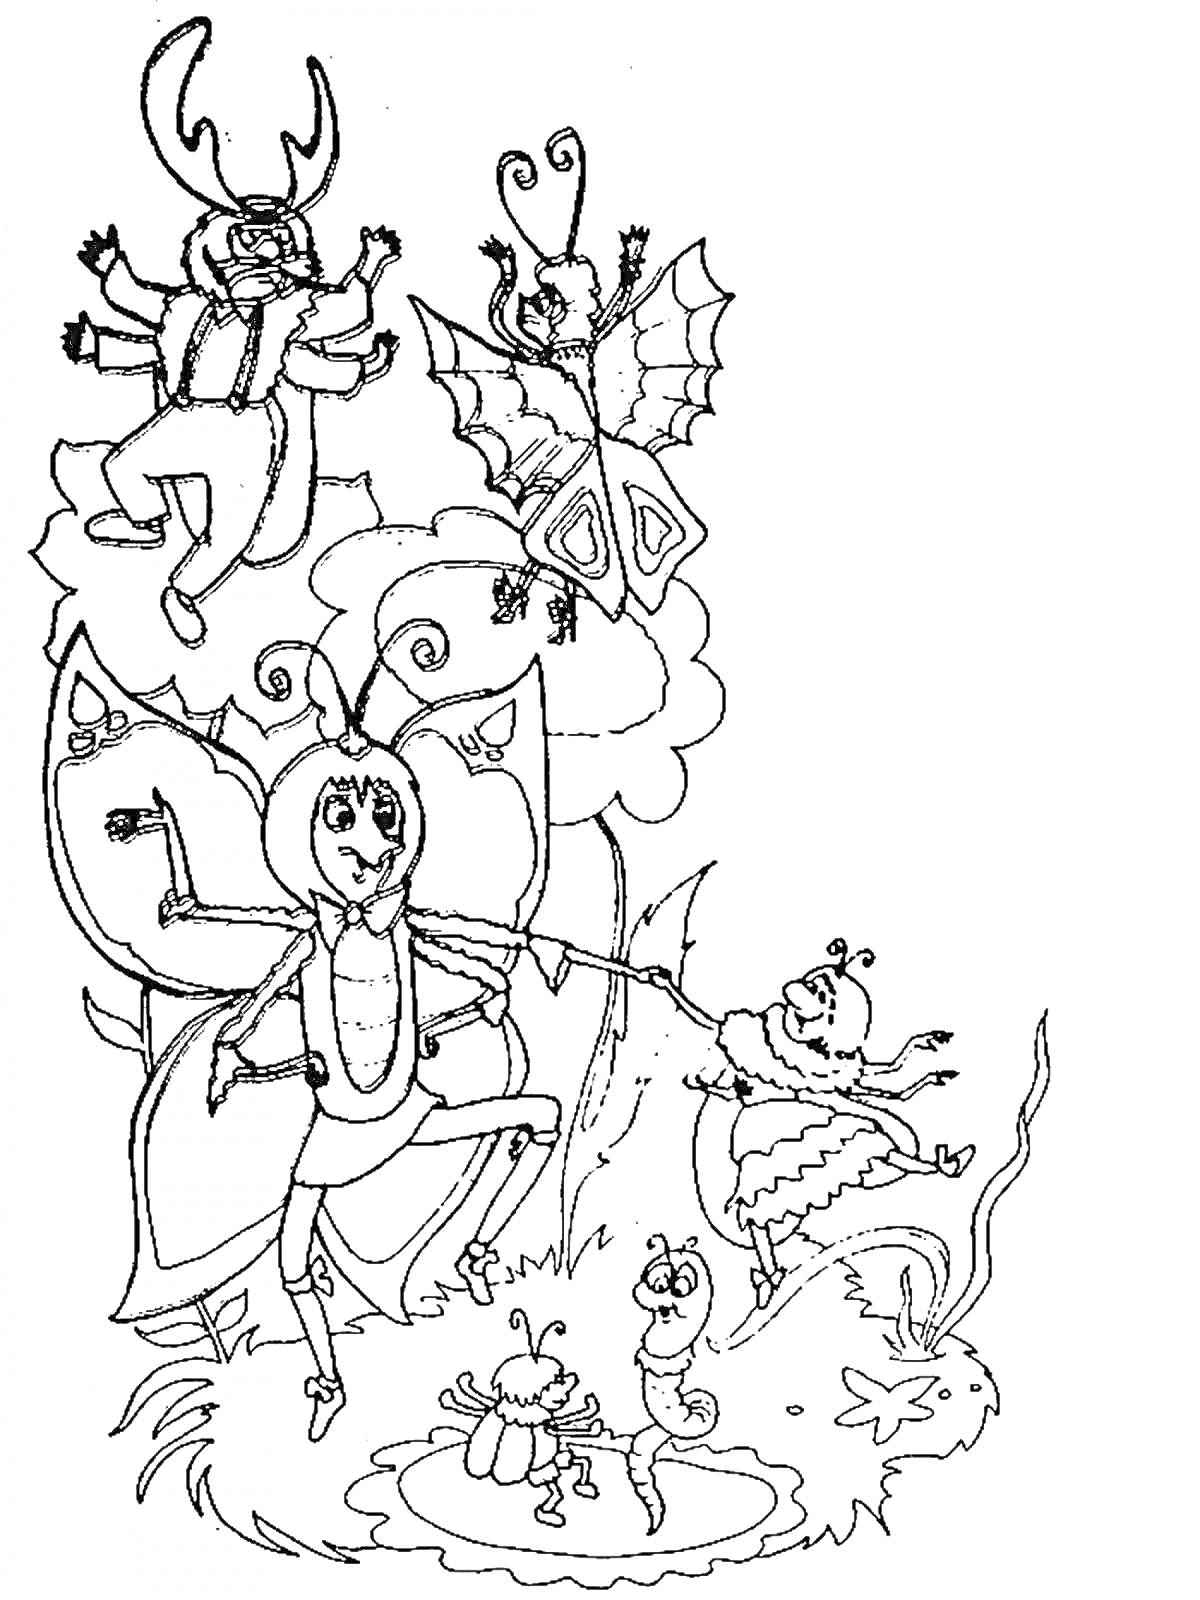 Раскраска Муха — Цокотуха с гостями у пруда